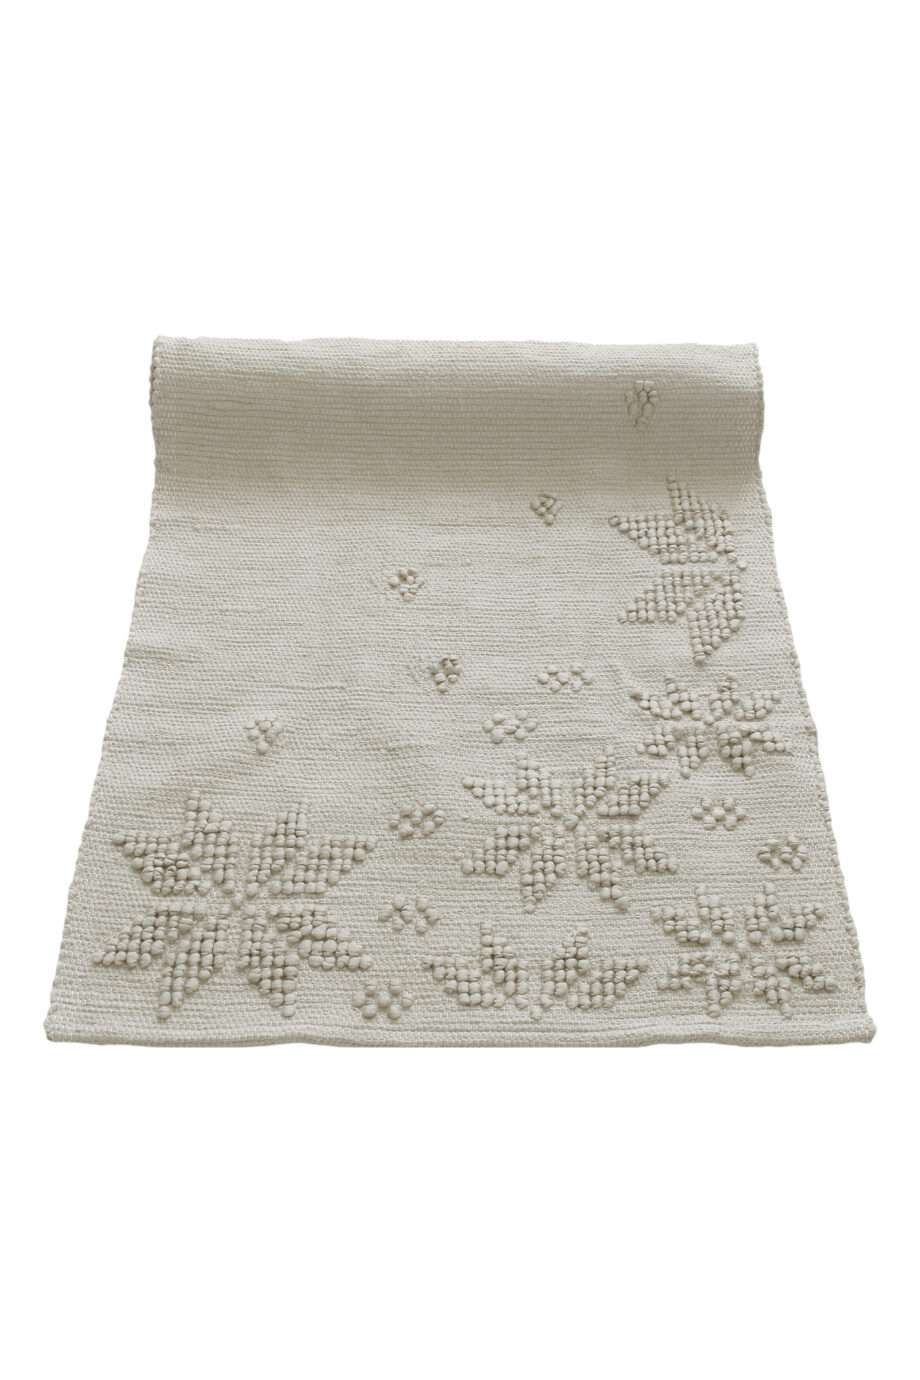 snowflakes linen woven cotton rug medium